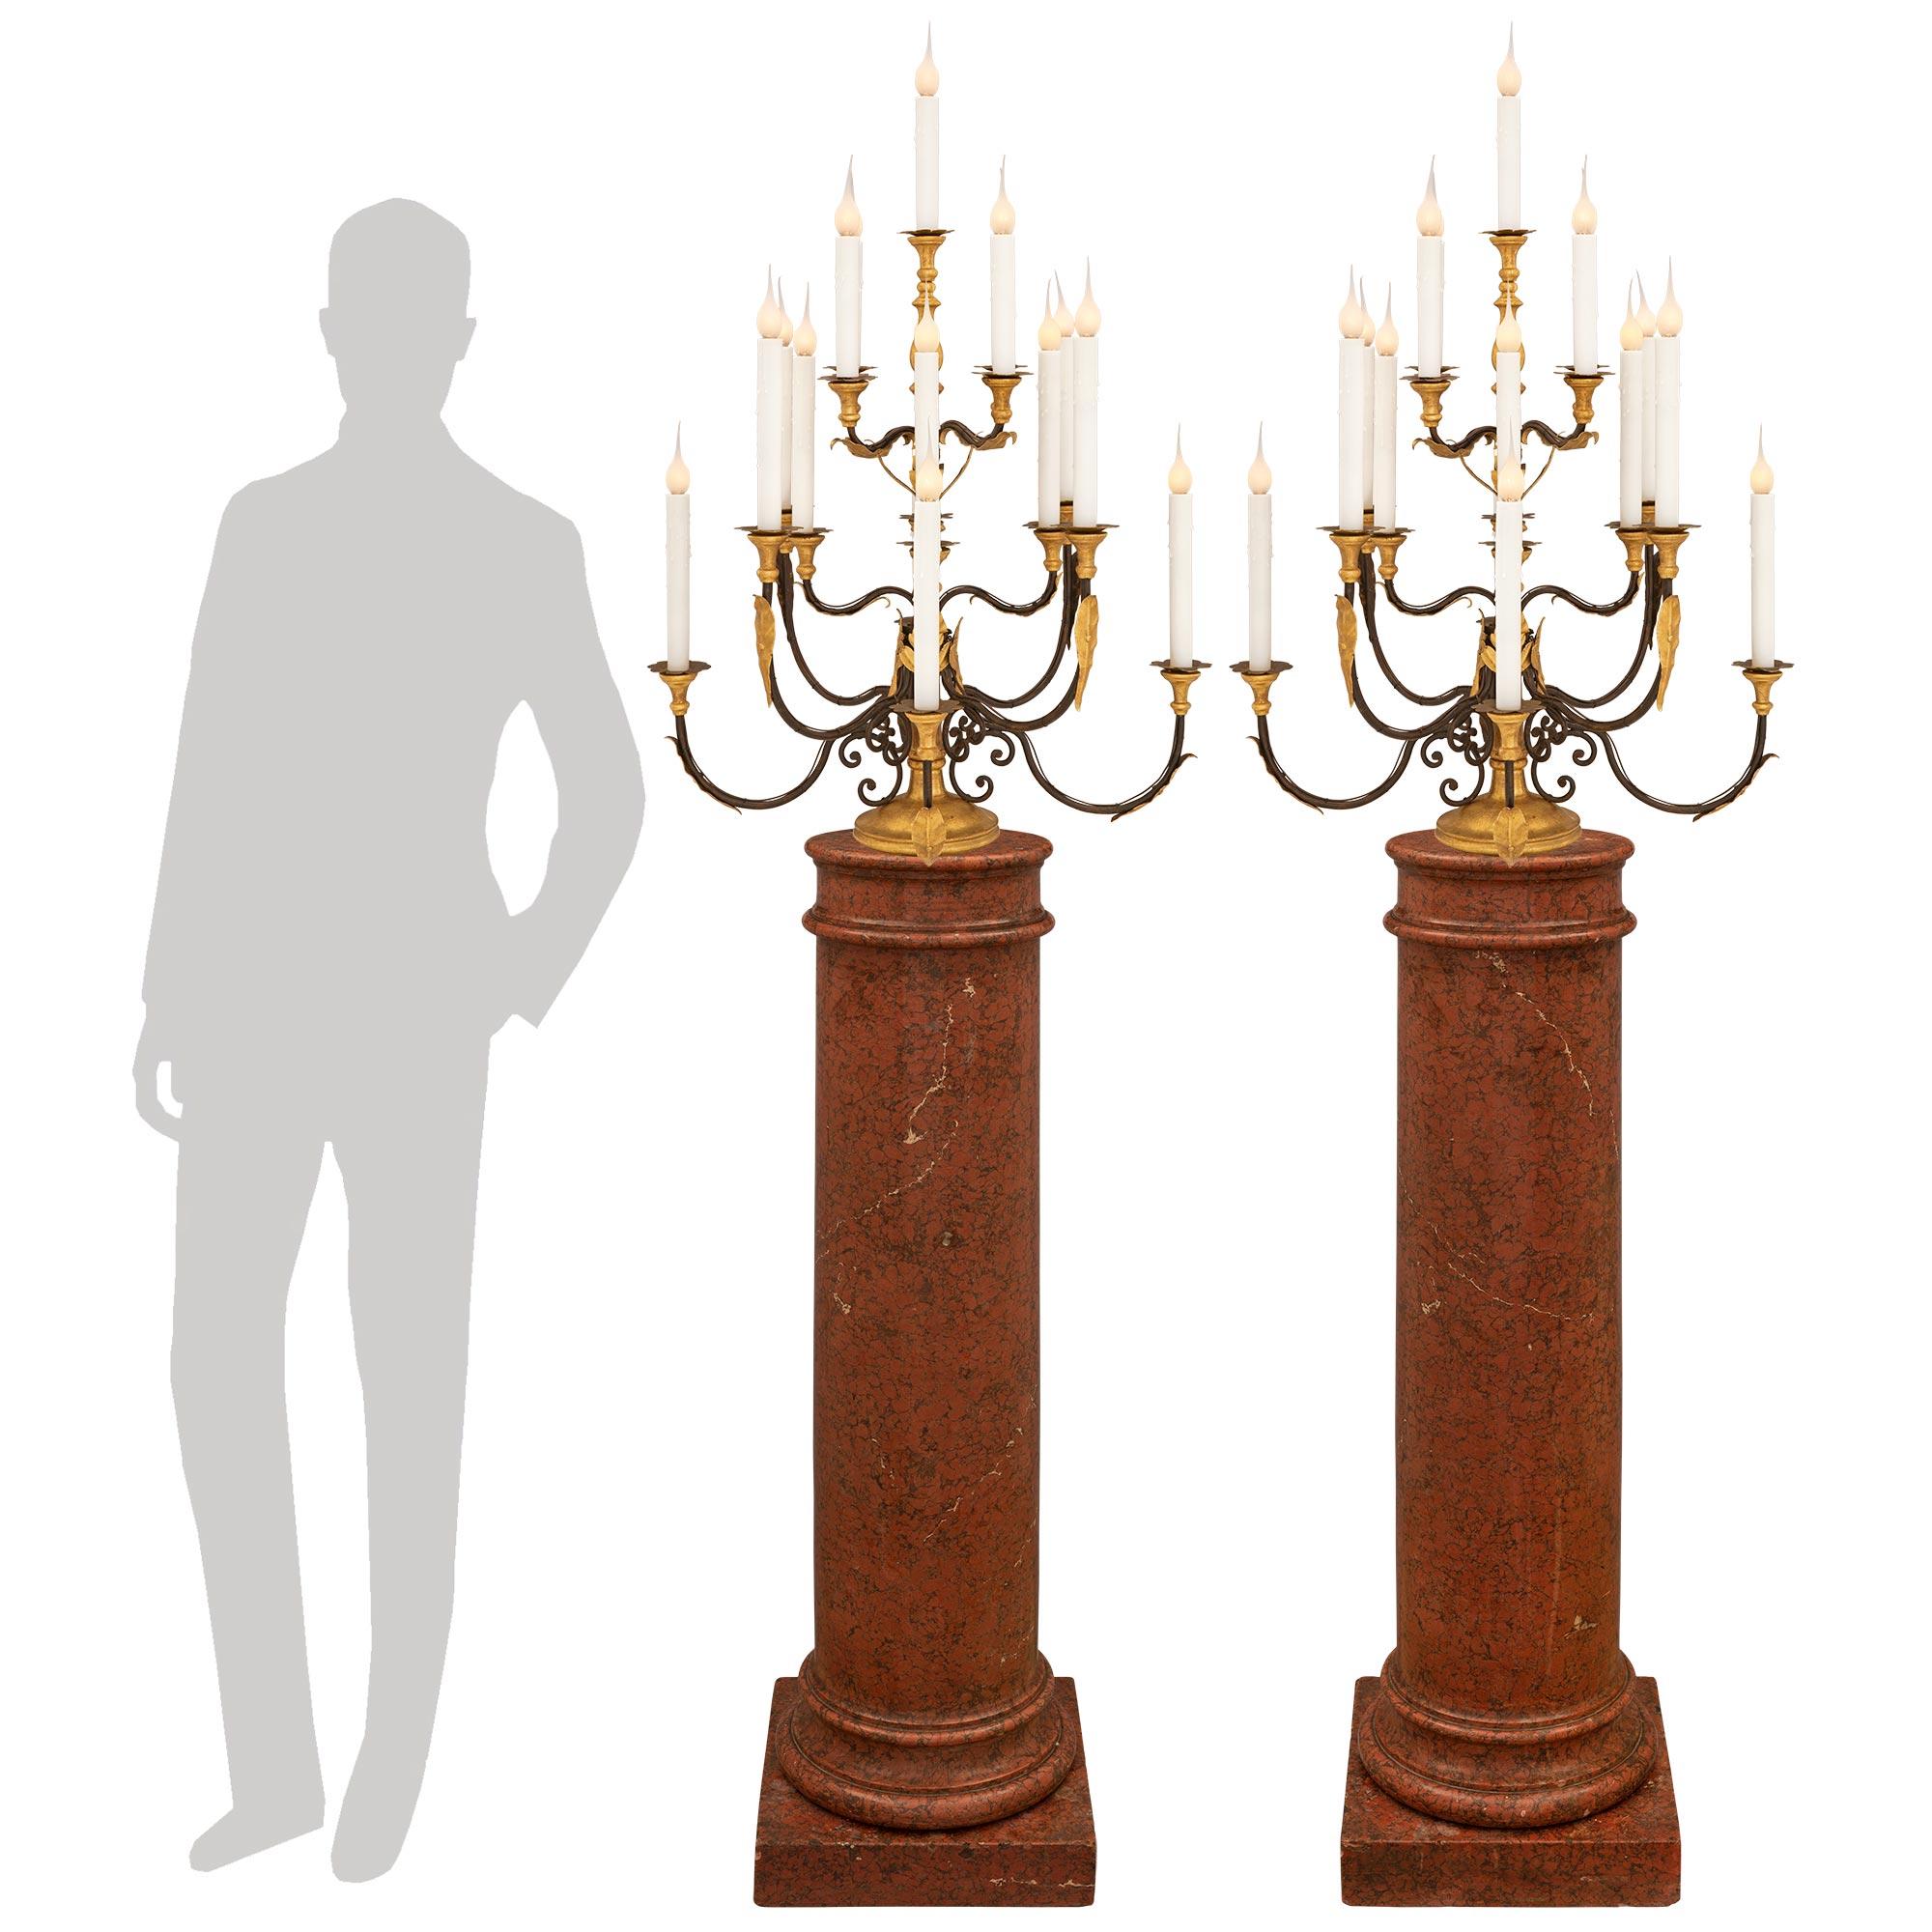 Magnifique paire de lampes candélabres baroques italiennes du XVIIIe siècle en fer forgé, bois doré et métal doré pressé. Chaque lampe à dix-sept bras repose sur une élégante base circulaire en bois doré avec une fine bordure marbrée. Chacun des